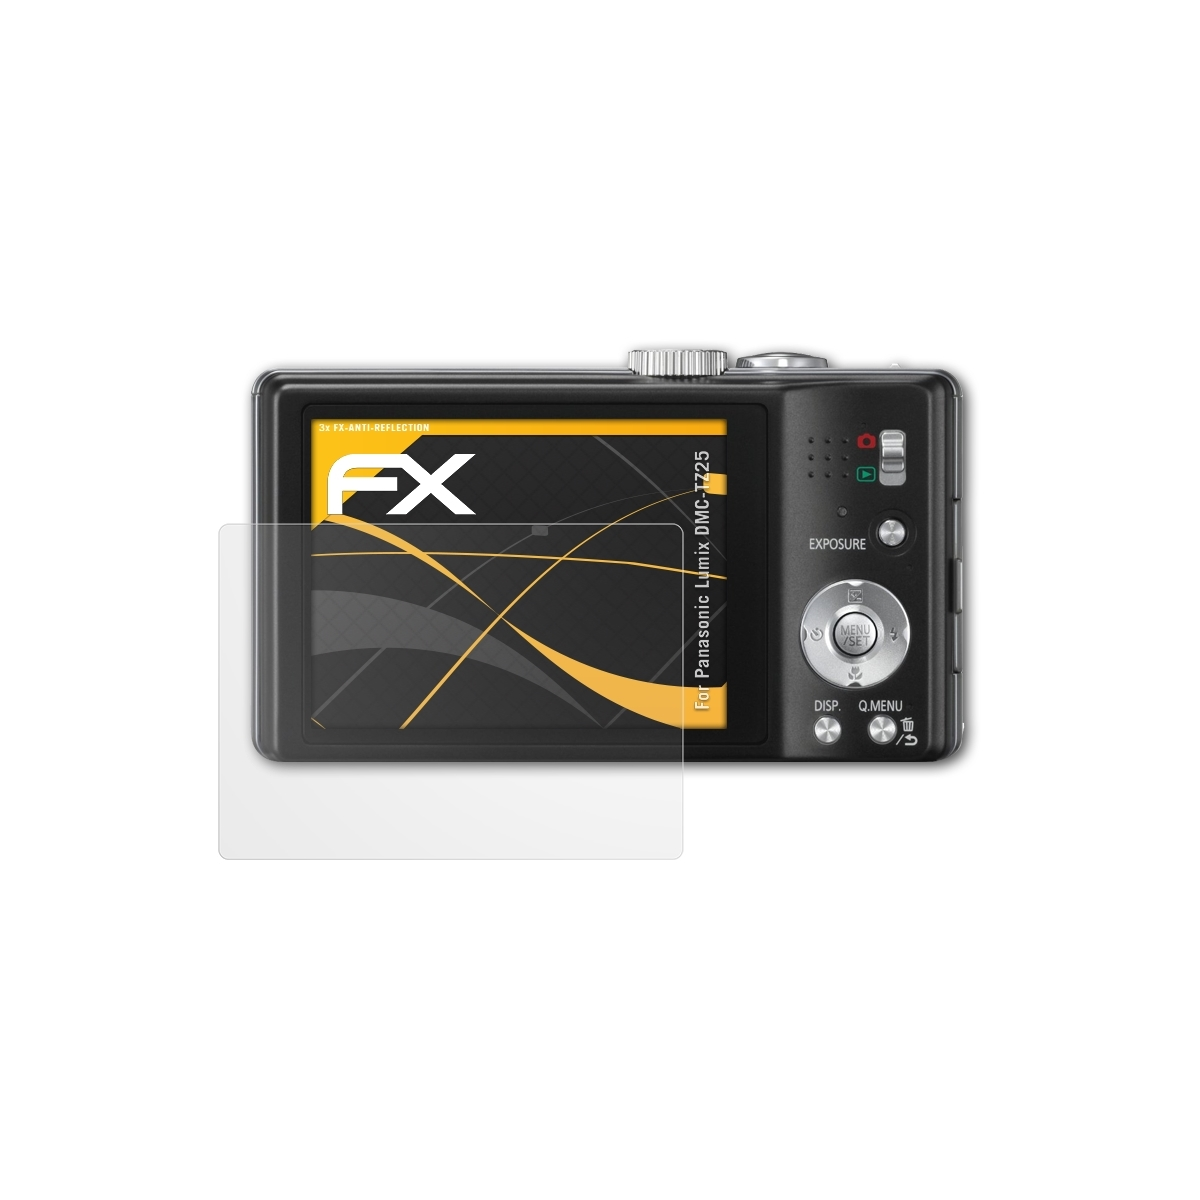 ATFOLIX 3x DMC-TZ25) Displayschutz(für Panasonic Lumix FX-Antireflex